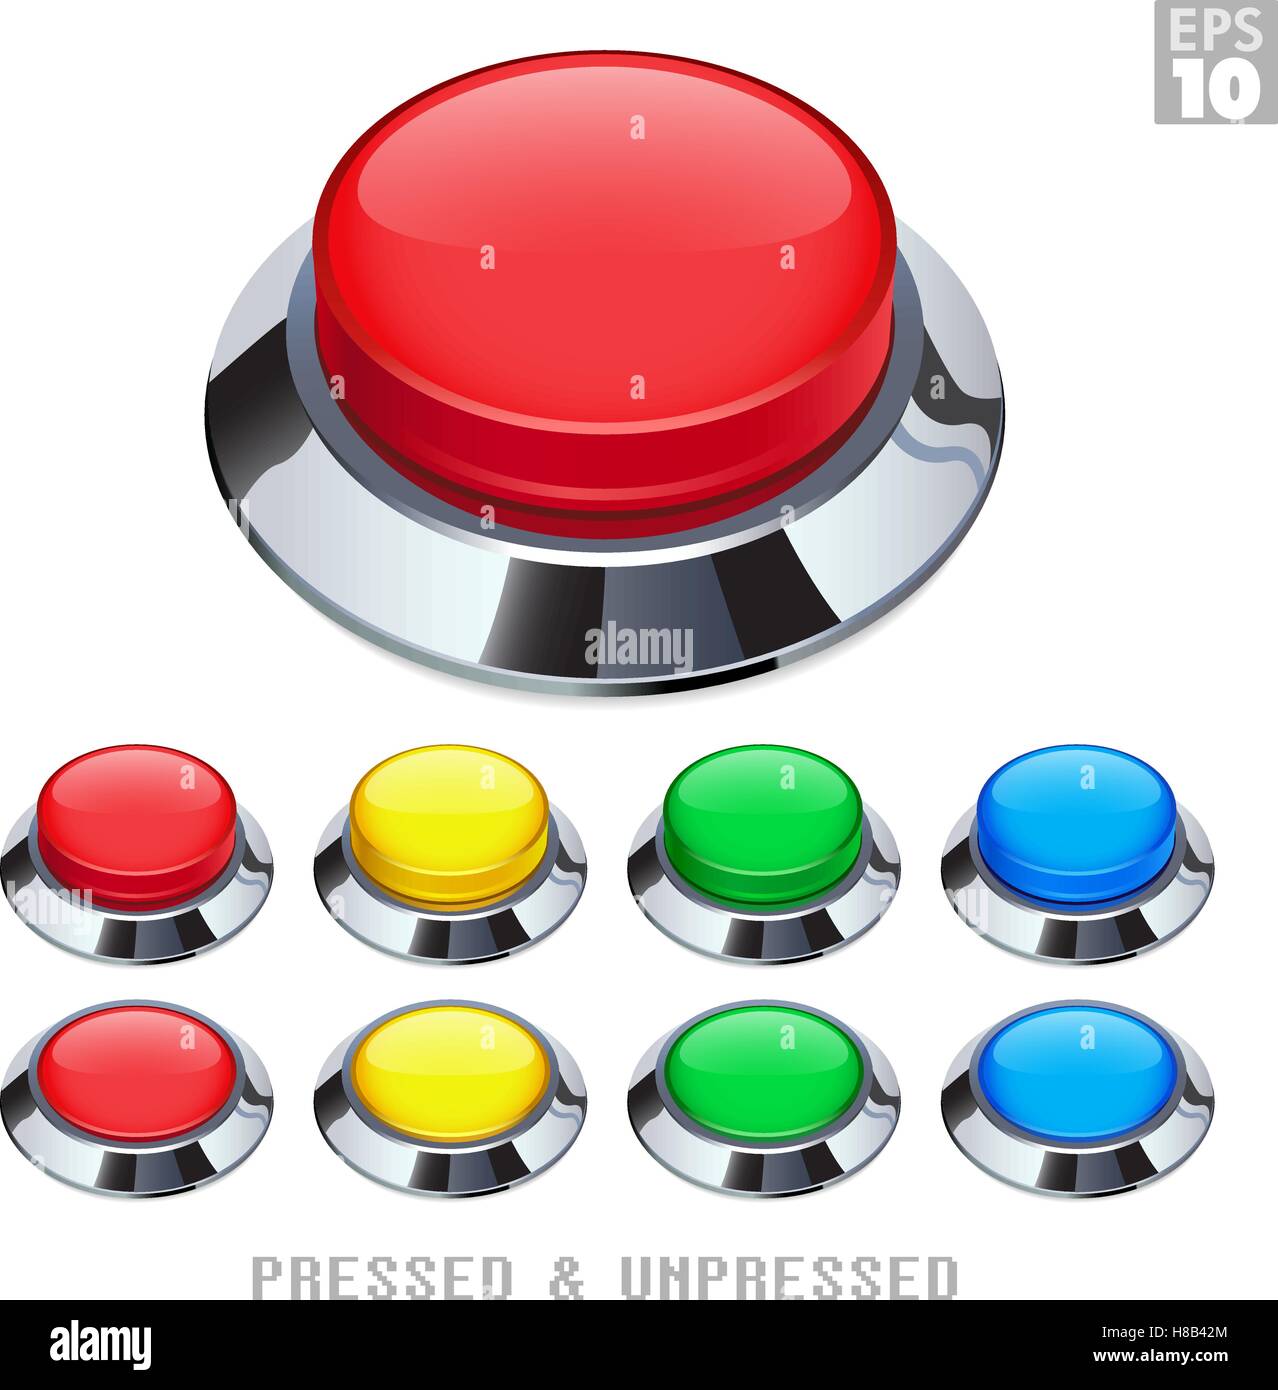 Botones pulsadores de arcade con marco cromado presionado y sin